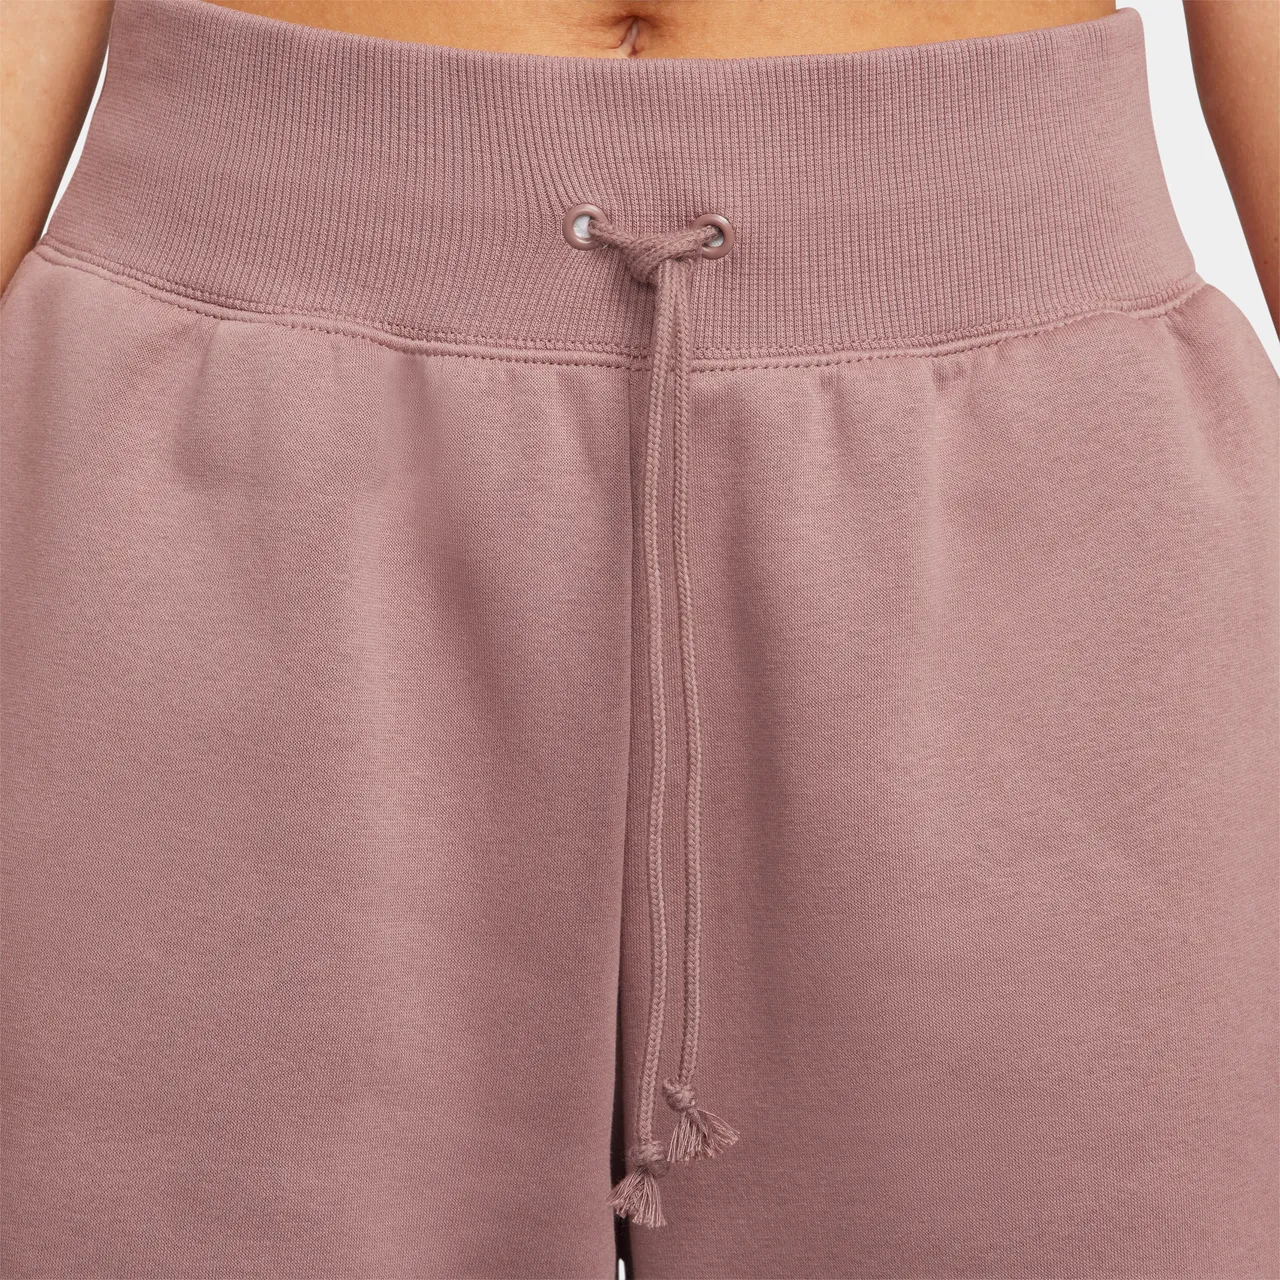 Nike Sportswear Phoenix Fleece Women's High-Waisted Oversized Tracksuit Bottoms - Purple - Polyester